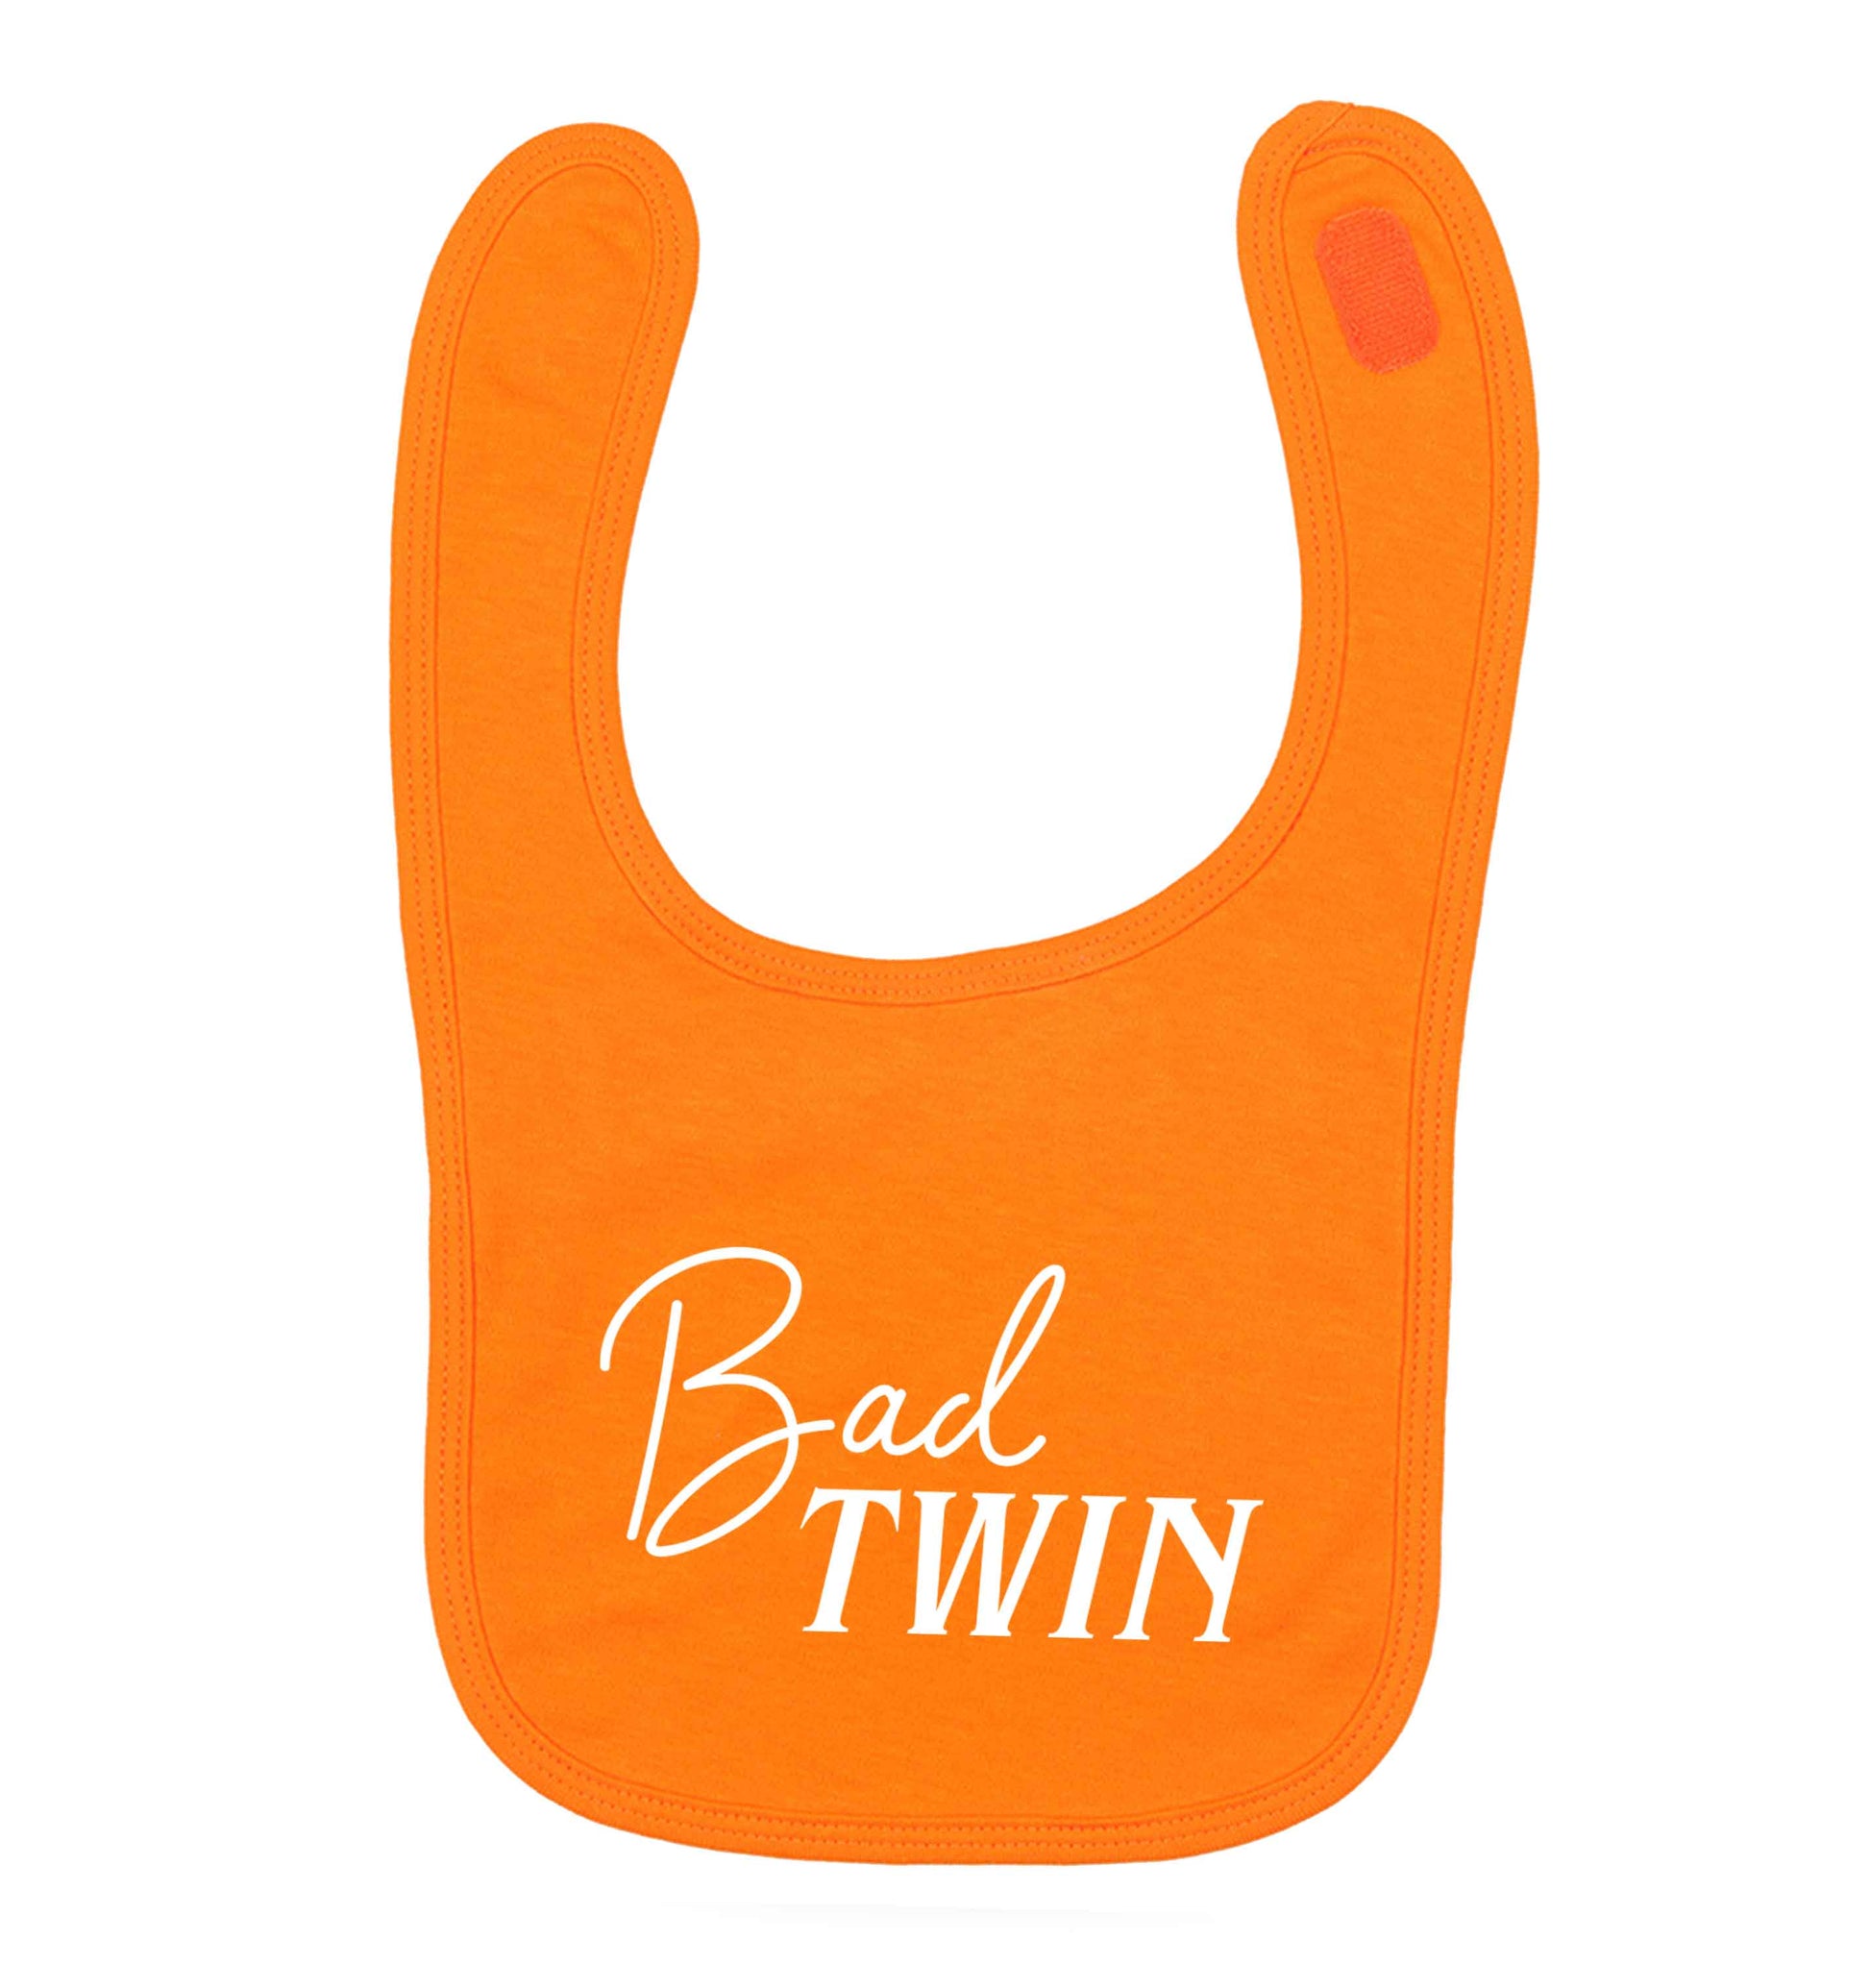 Bad twin orange baby bib